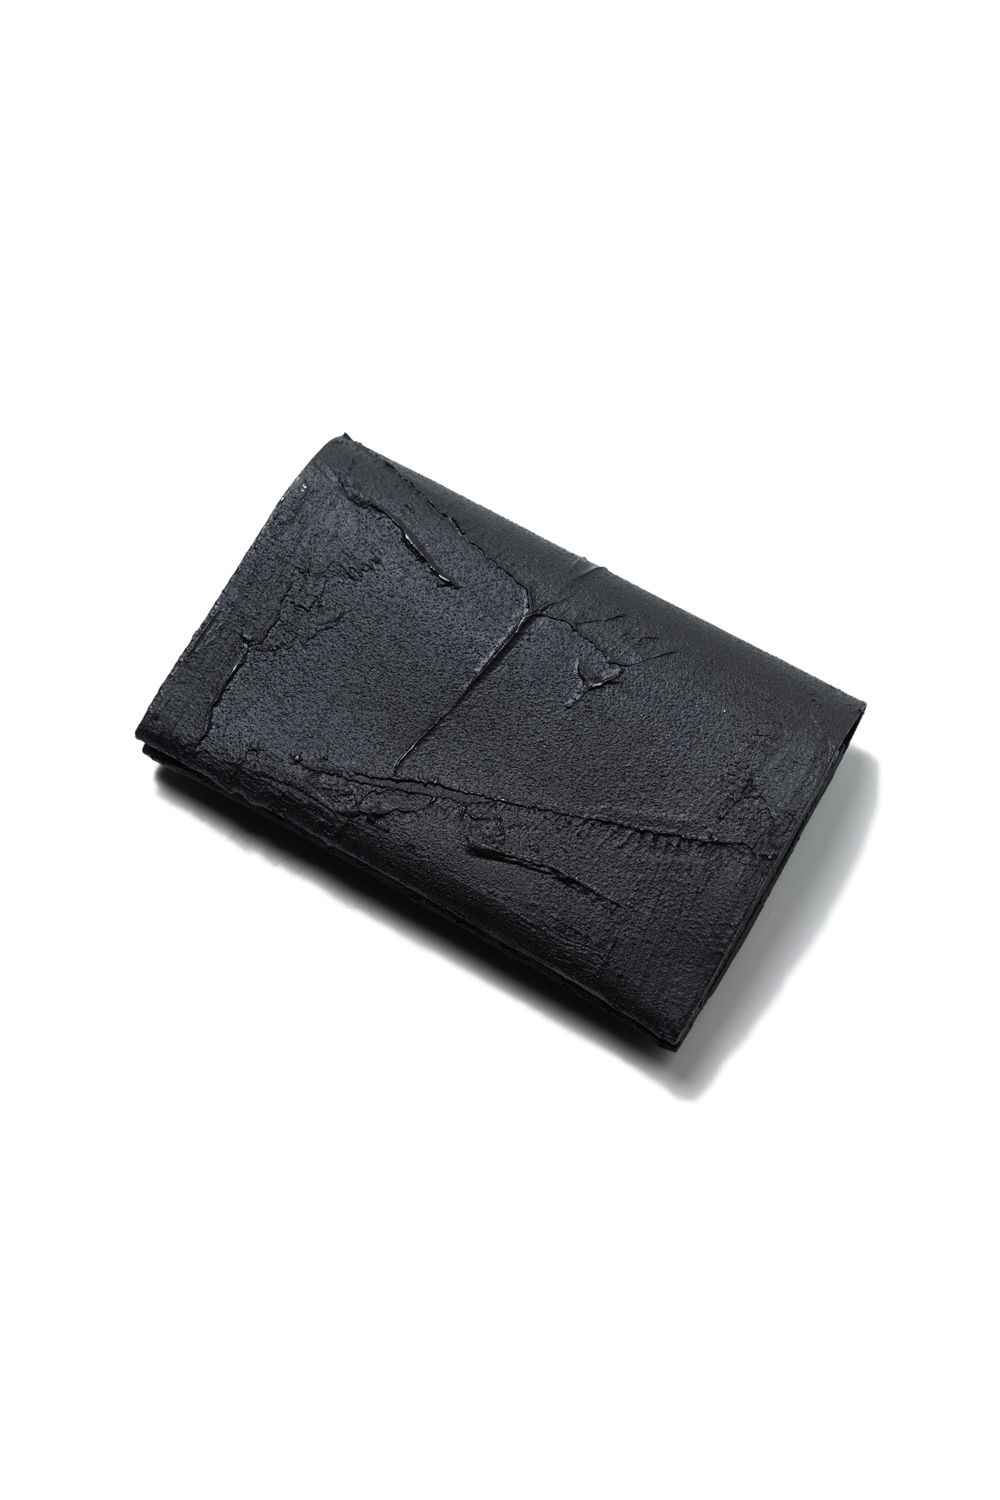 KAGARI YUSUKE - 【お取り寄せ可能】二つ折り財布 [黒い壁] / mw13-bk 